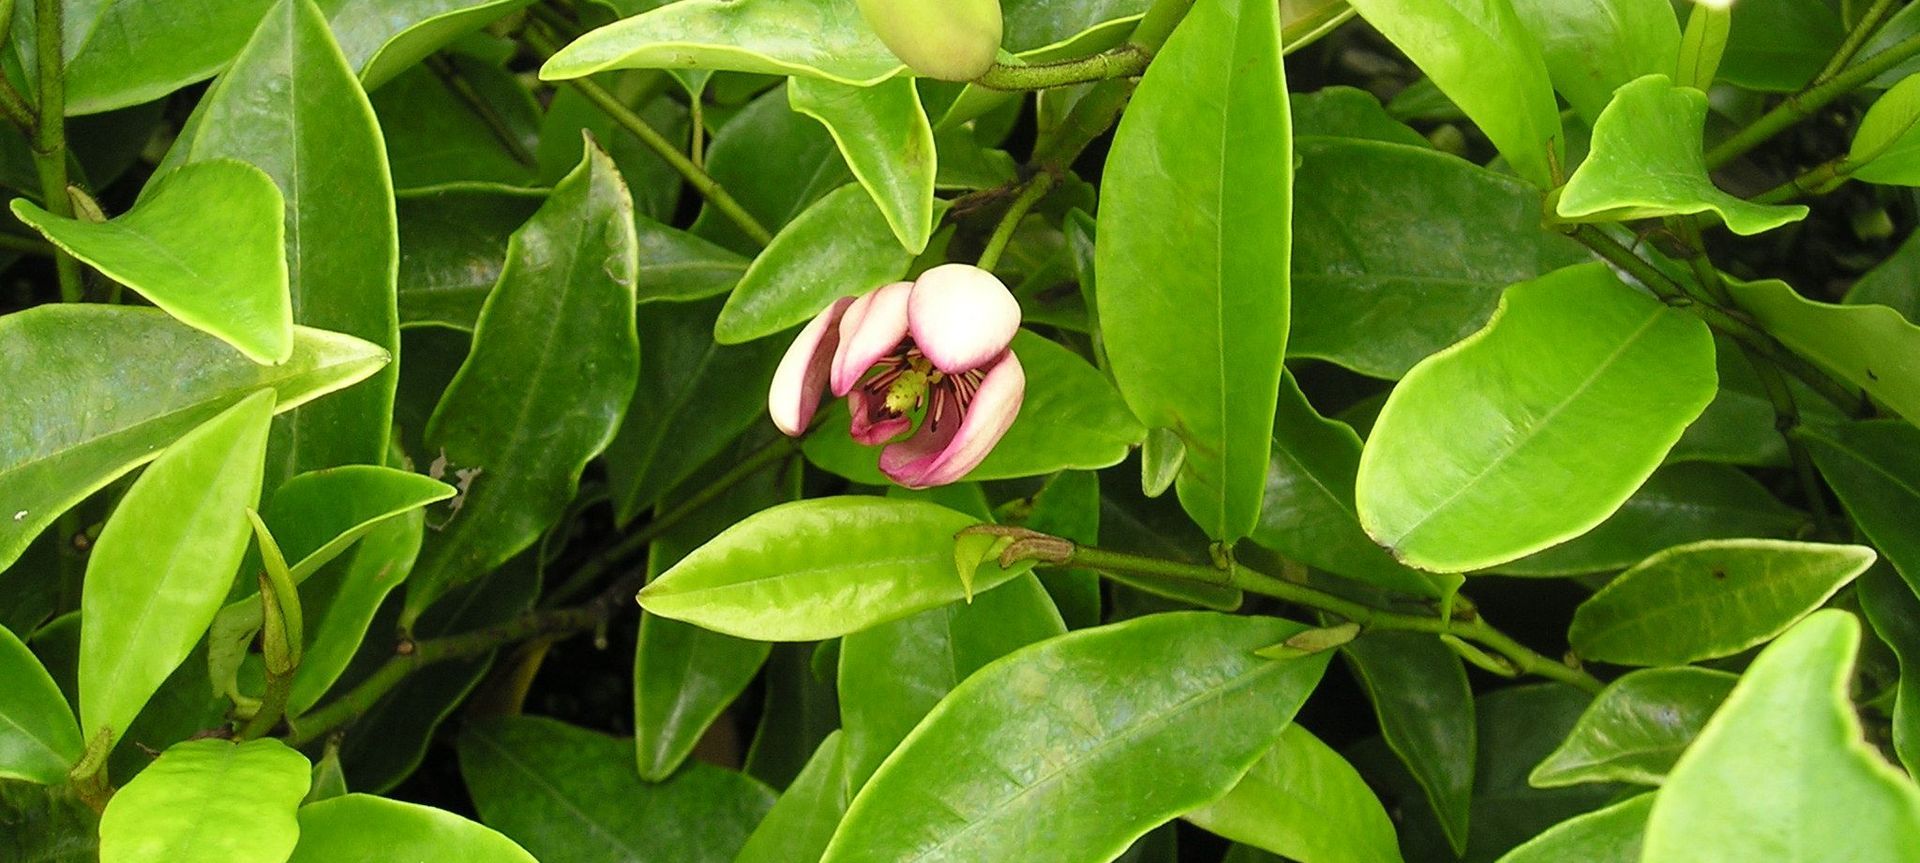 The Michelia Figo (Port Wine Magnolia).